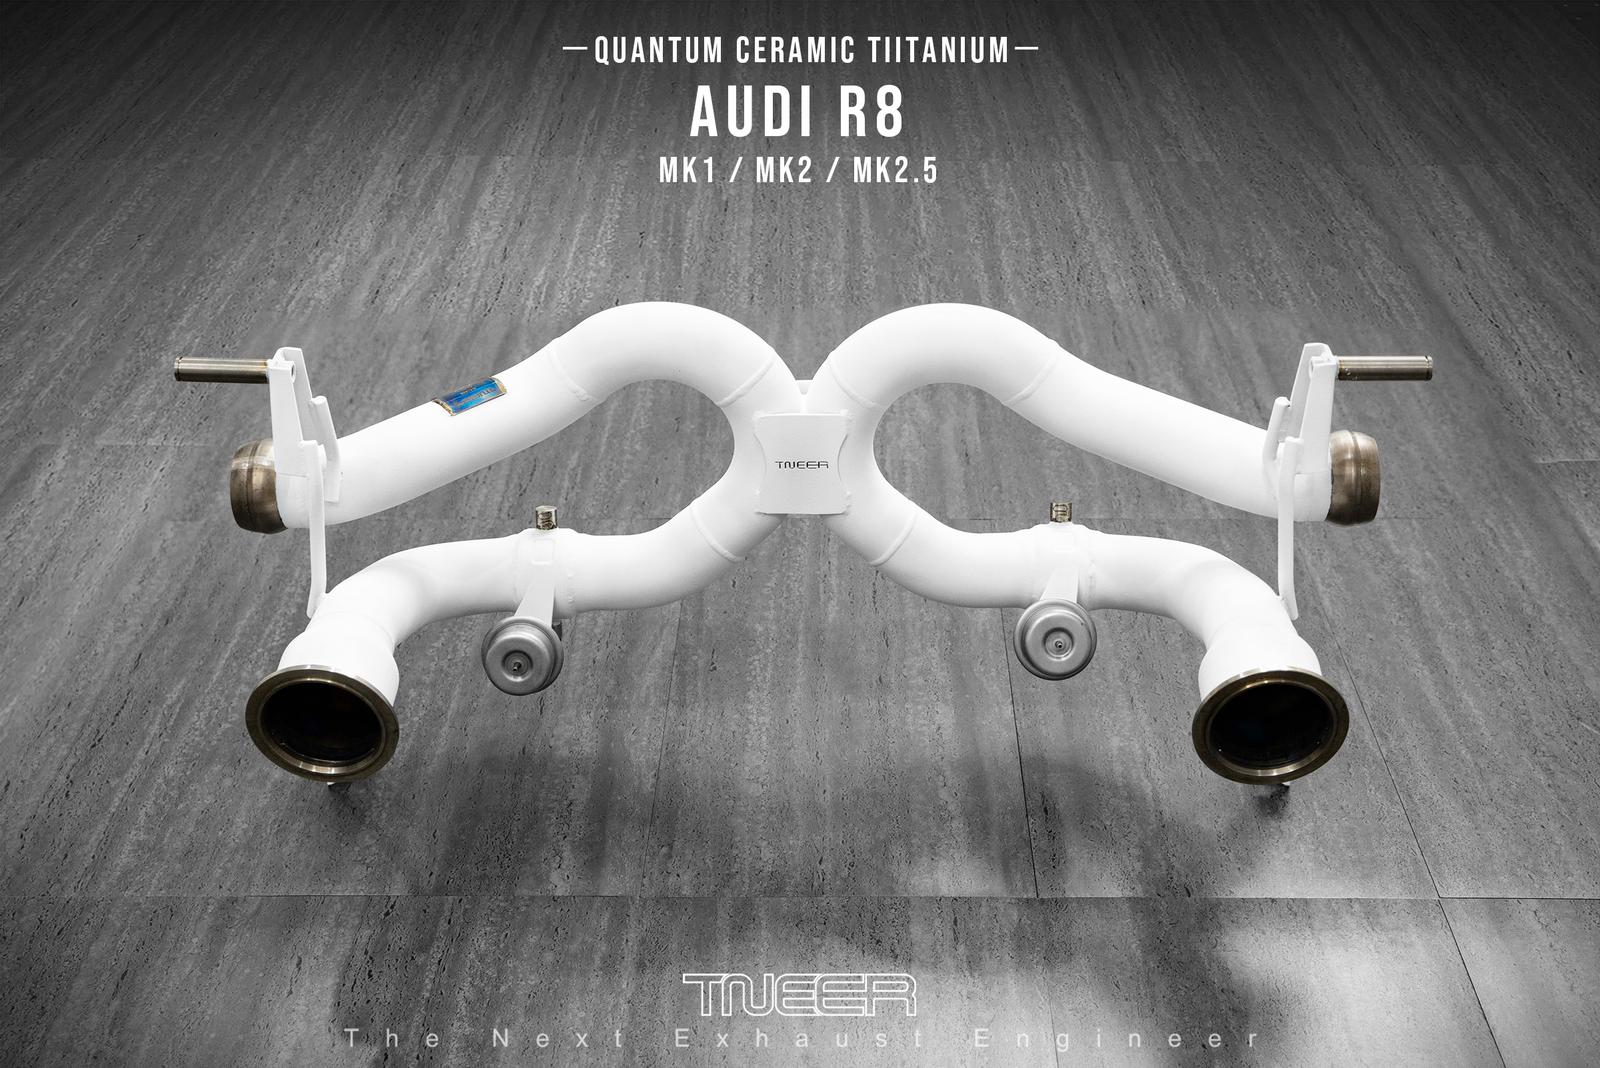 AUDI R8 (MK1) V8 TNEER Special Edition Quantum Ceramic Race Titanium Exhaust System